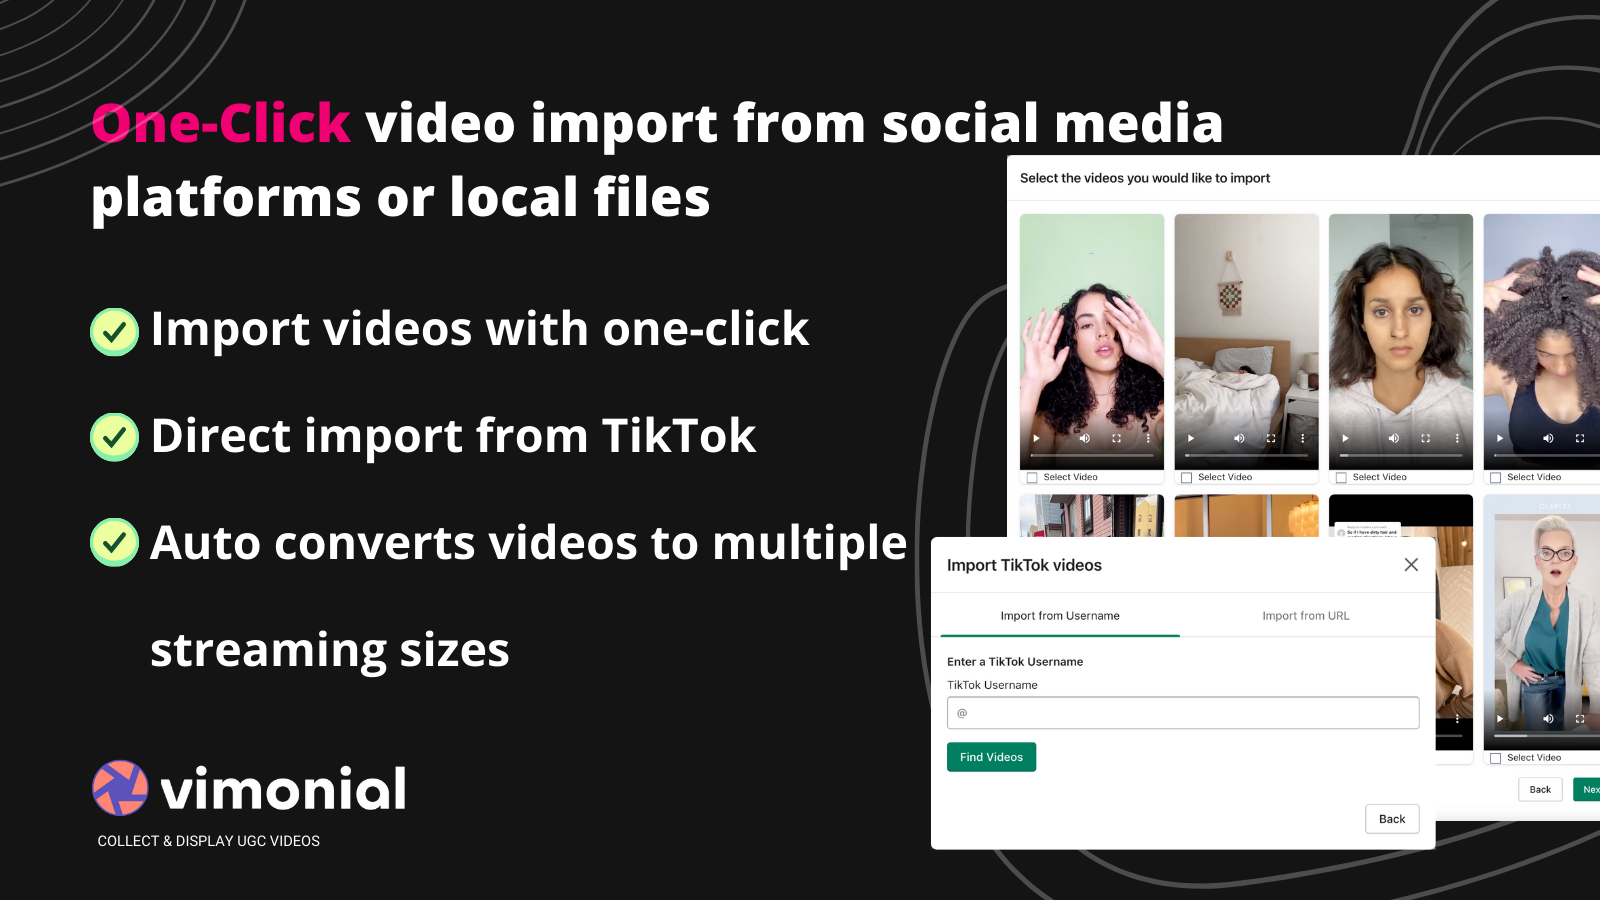 Importation de vidéos en un clic depuis les plateformes sociales ou les fichiers locaux